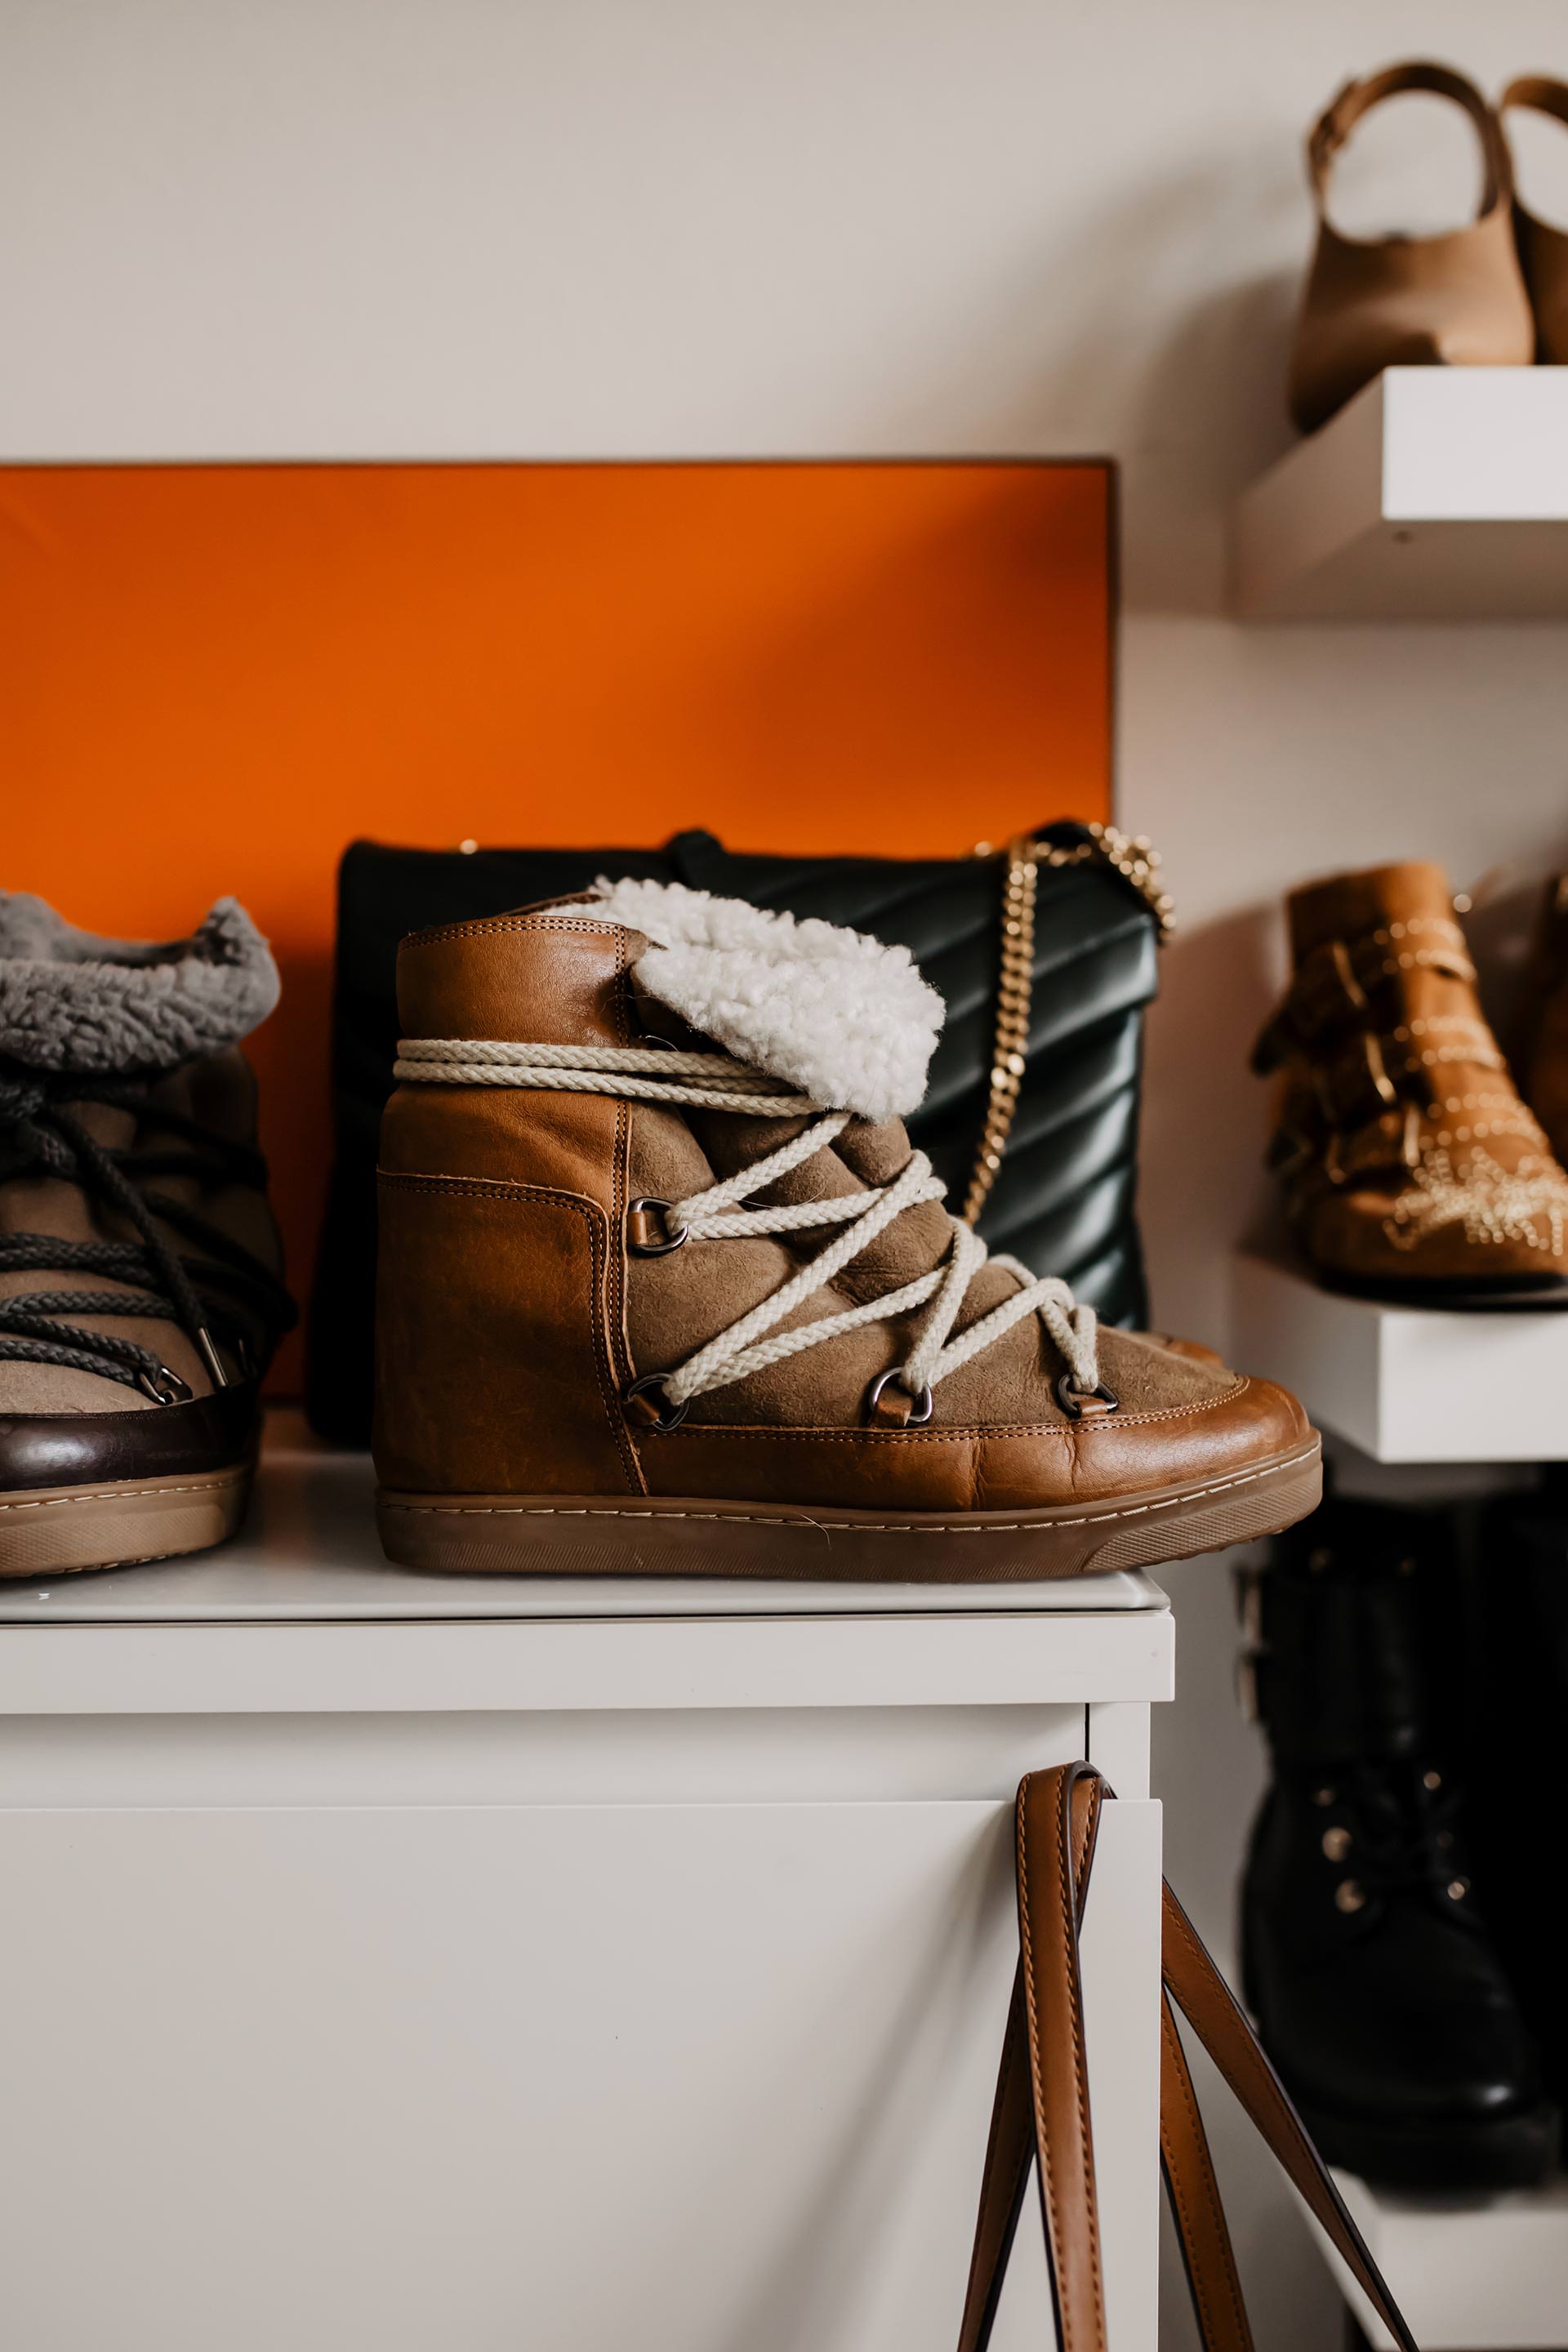 enthält unbeauftragte Werbung. welche schuhe trägt man im winter, isabel marant nowles boots review, winterstiefel für frauen, perfekte winterschuhe, winter boots online shopping, Winterstiefel online kaufen, isabel marant Schuhe kaufen, warme winter boots für damen, Schuhe für kalte tage, Schuhe für kalte füße, Schuhe für den winter, Modeblog, www.whoismocca.com #isabelmarant #nowlesboots #wintertrends #winterboots #modetrends #winterschuhe